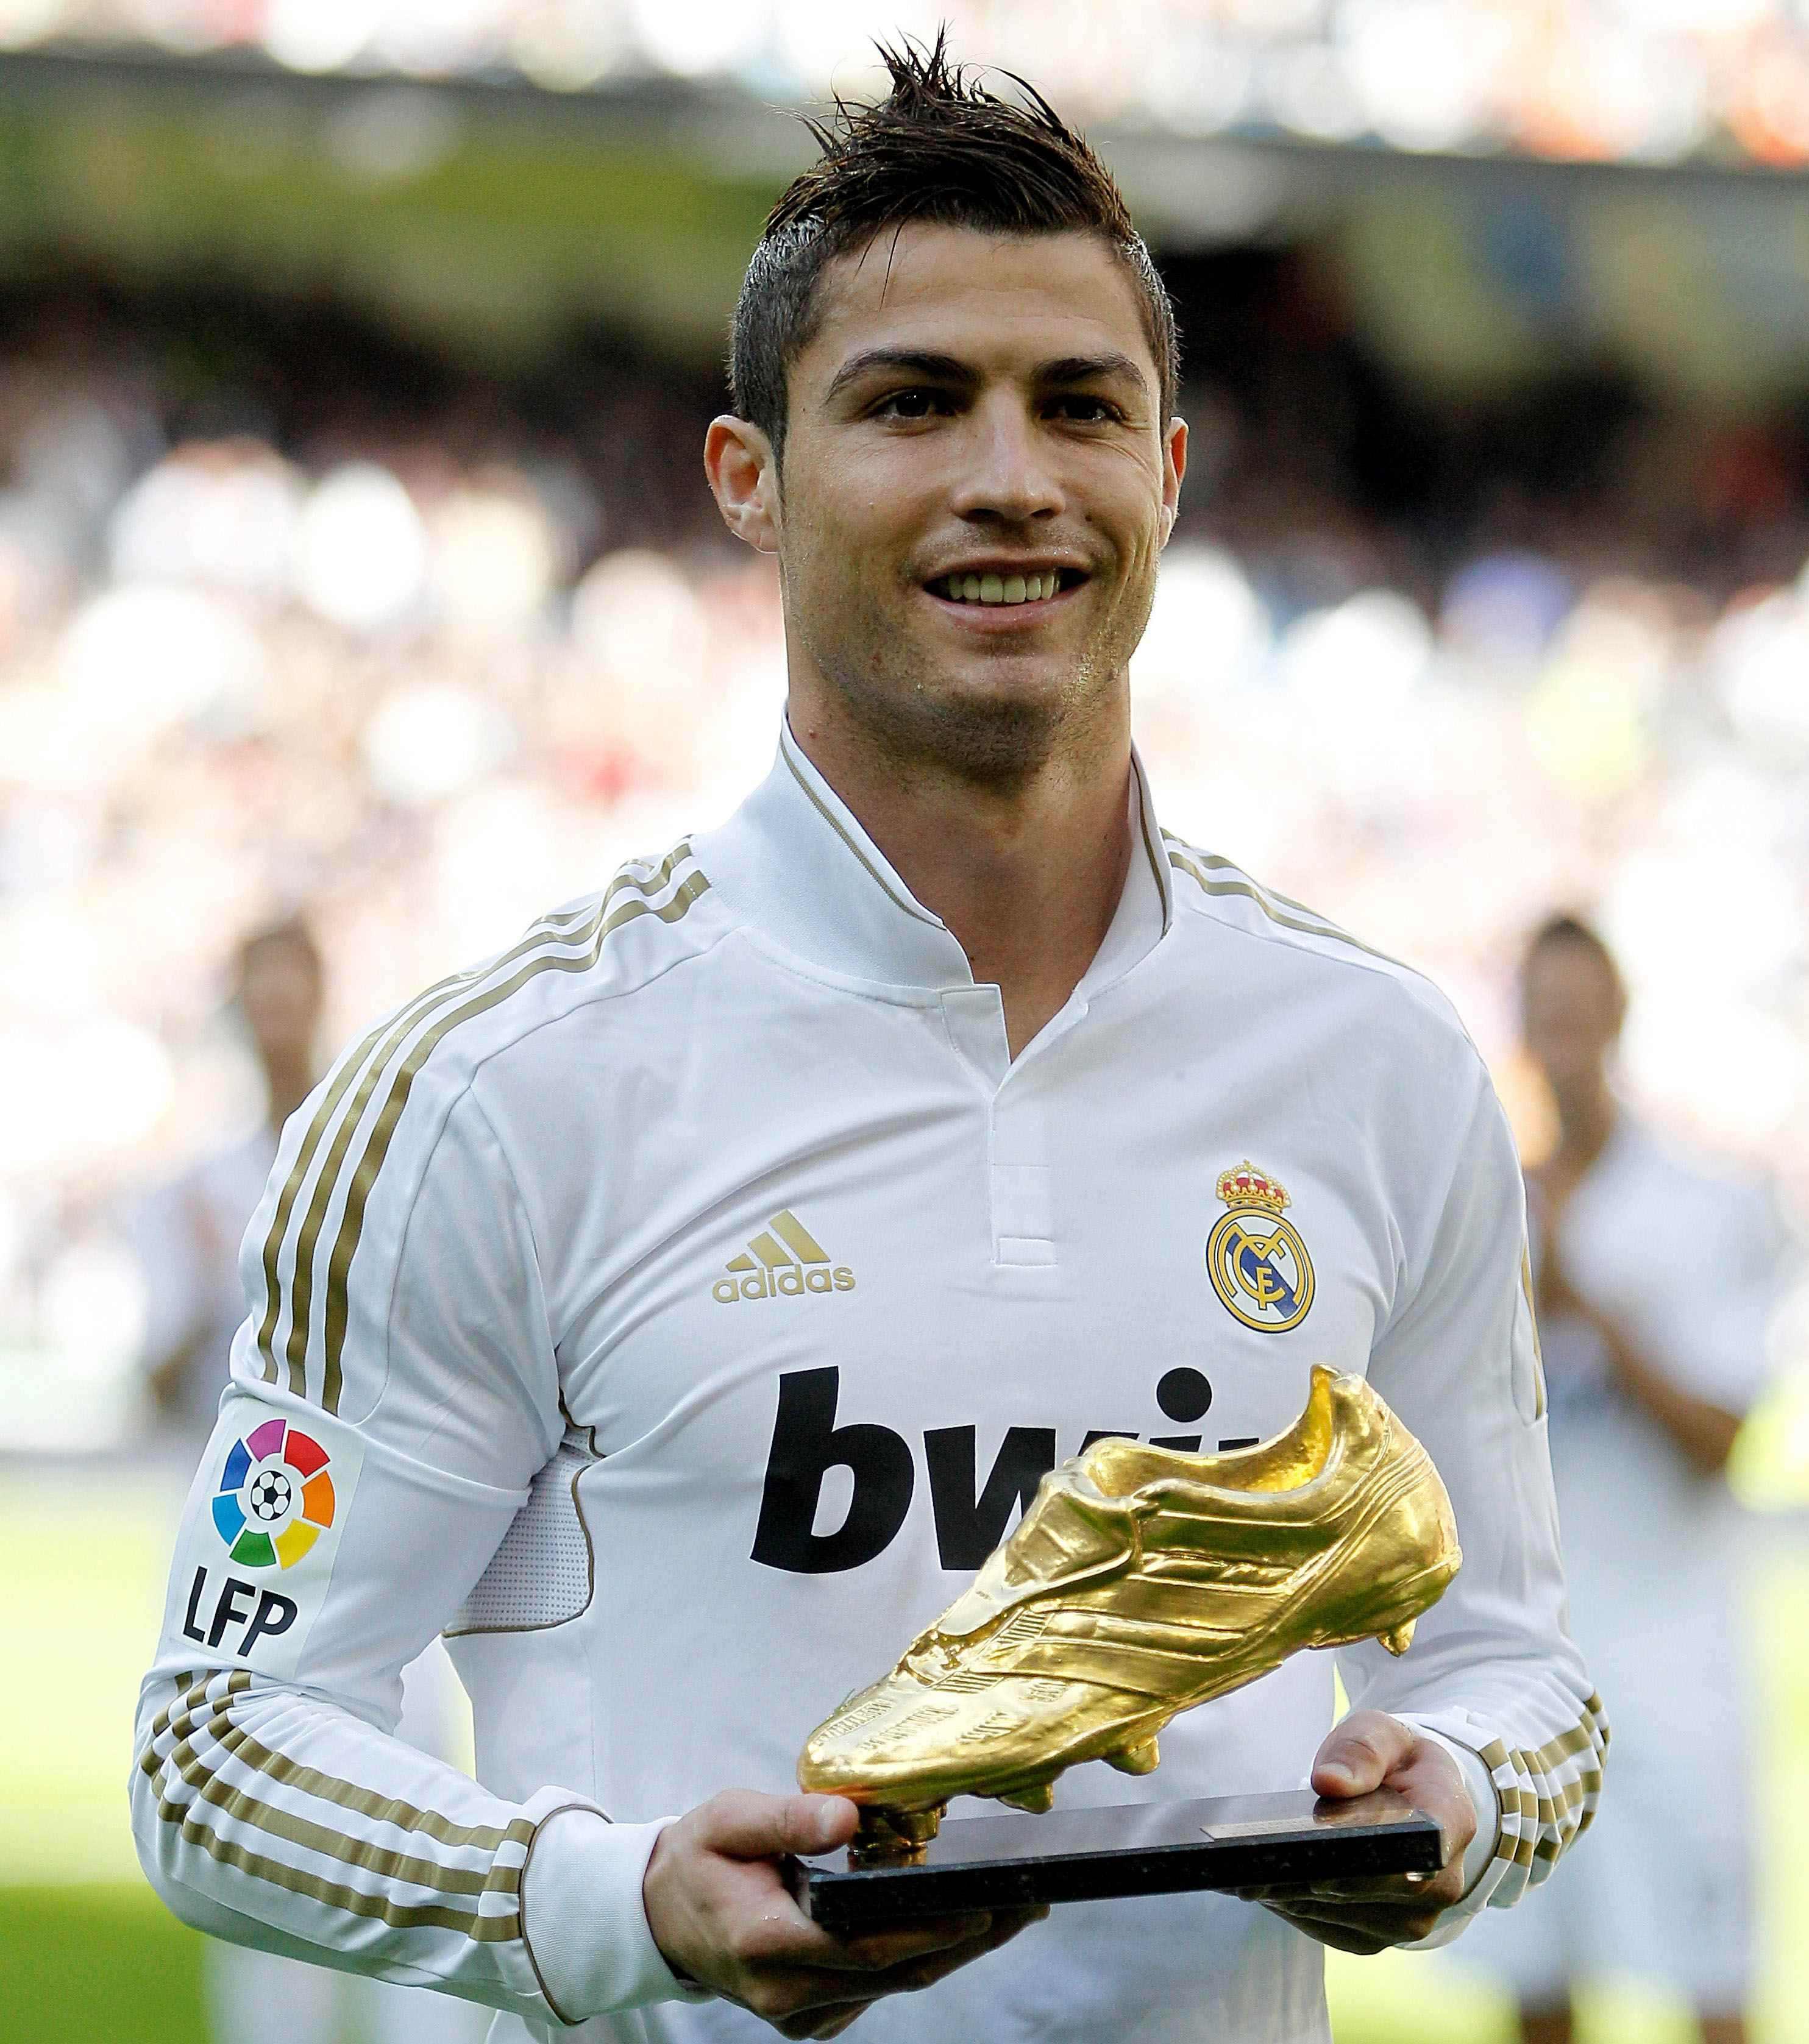 Ronaldo Large Image